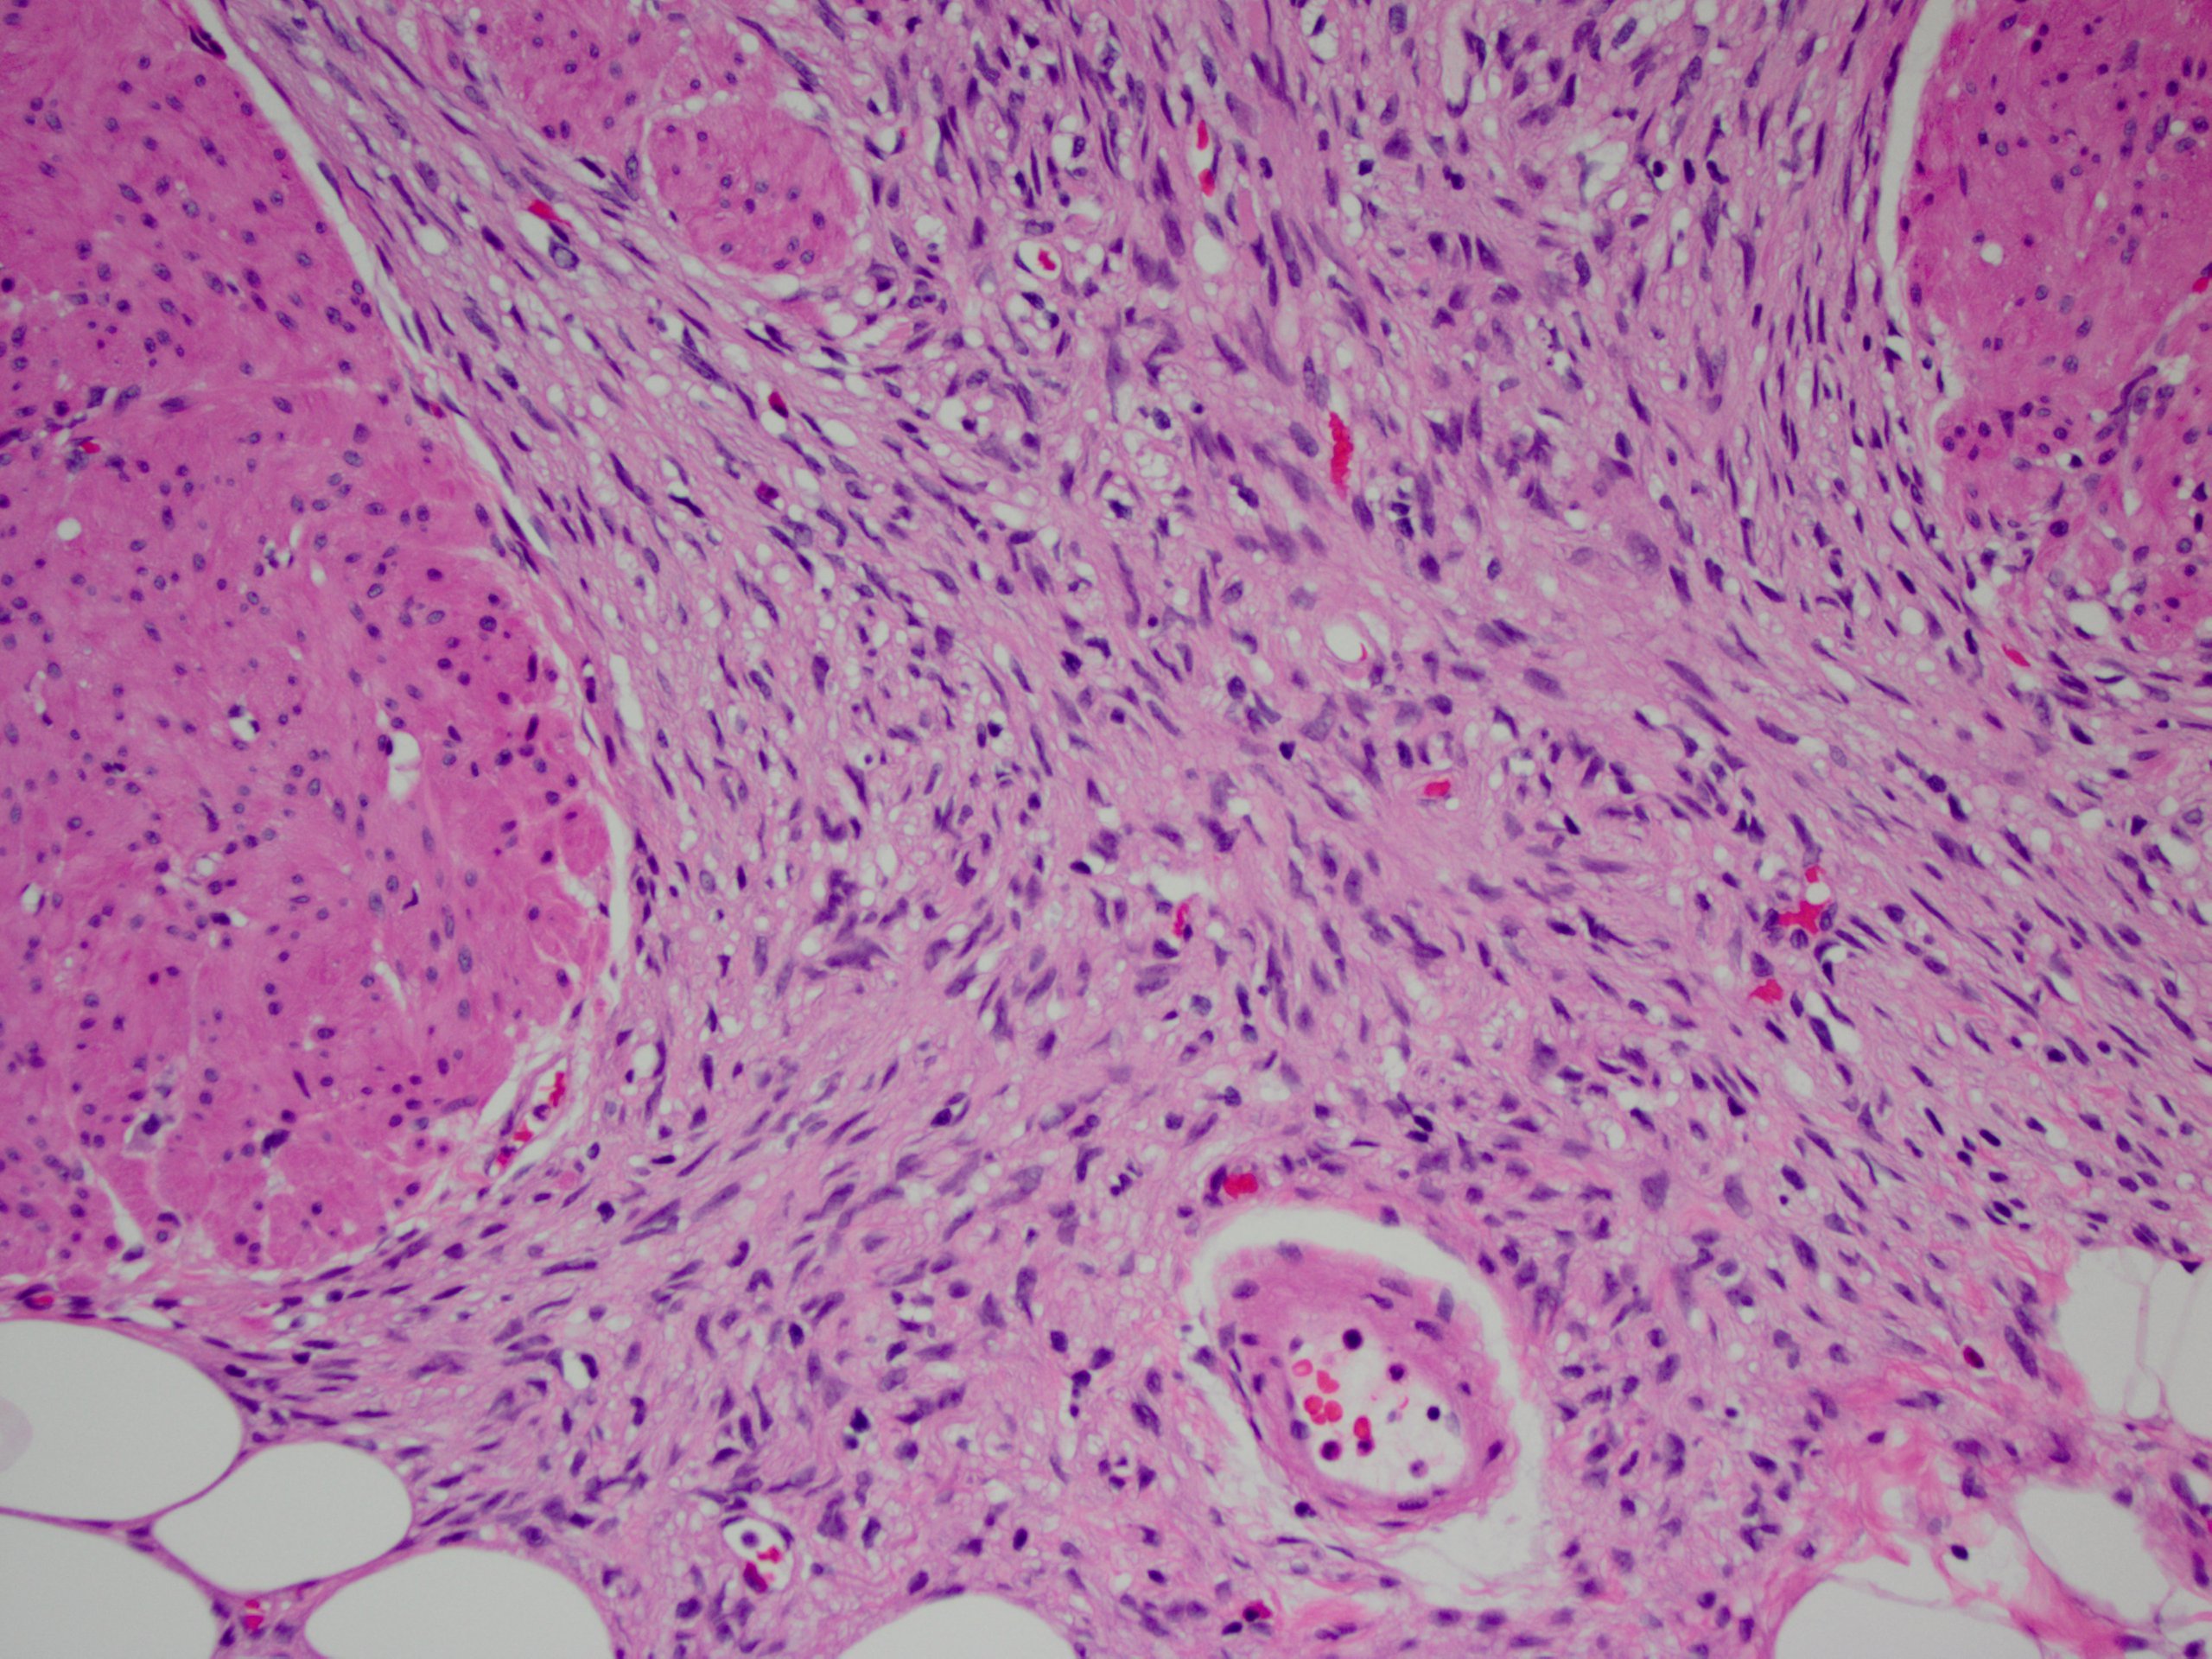 Pathology Outlines Gastrointestinal Stromal Tumor GIST Of Colon.